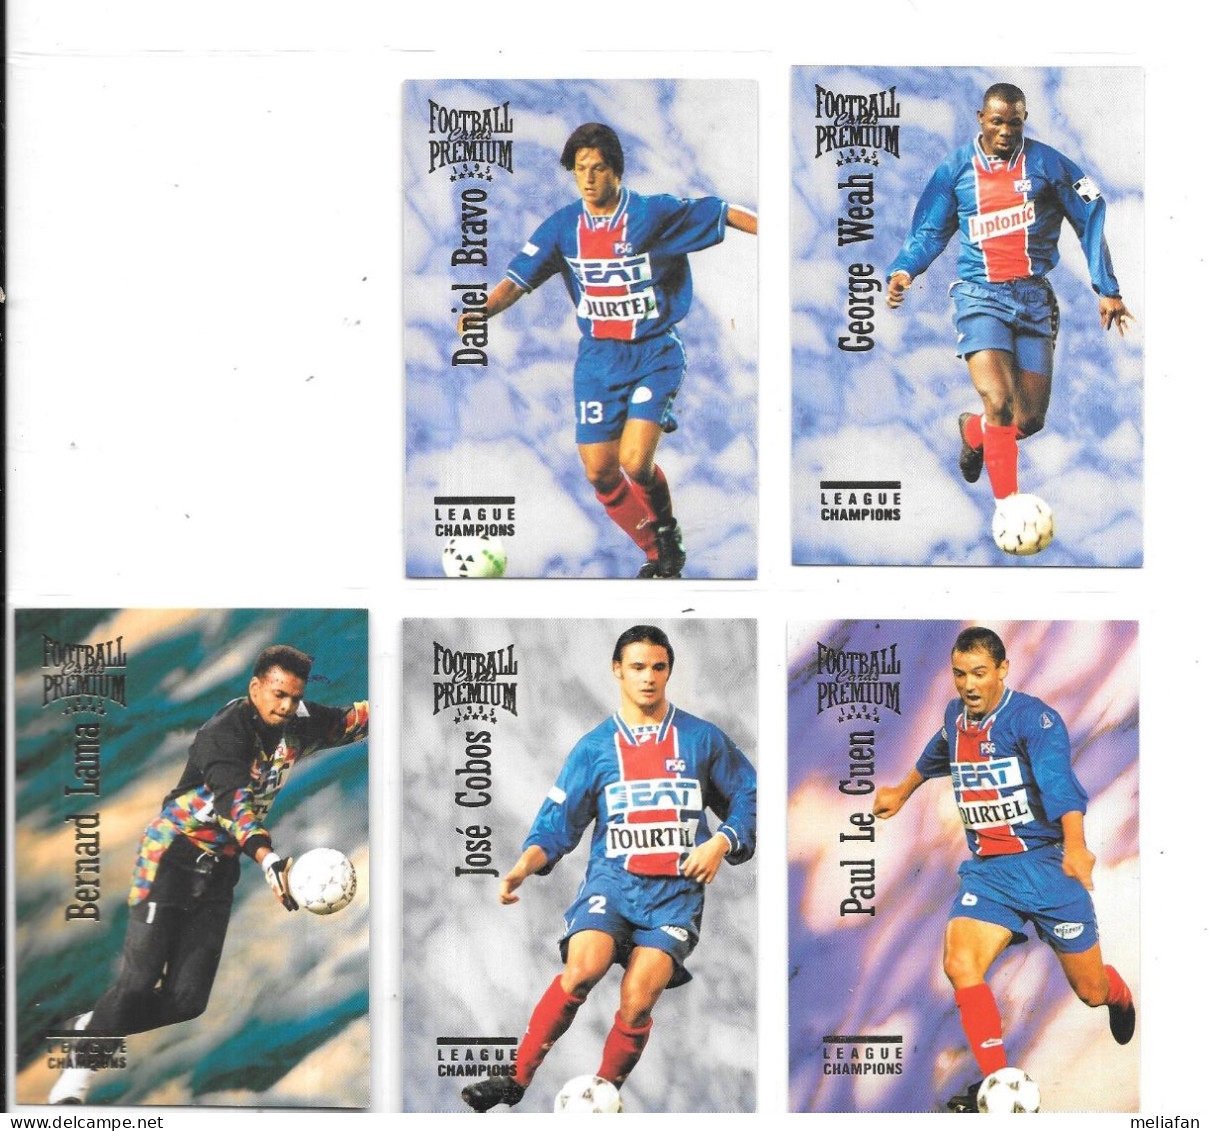 DX02 - CARTES PANINI FOOTBALL PREMIUM 1995 - PSG - GEORGE WEAH - BERNARD LAMA - PAUL LE GUEN - JOE COBOS - DANIEL BRAVO - Trading-Karten